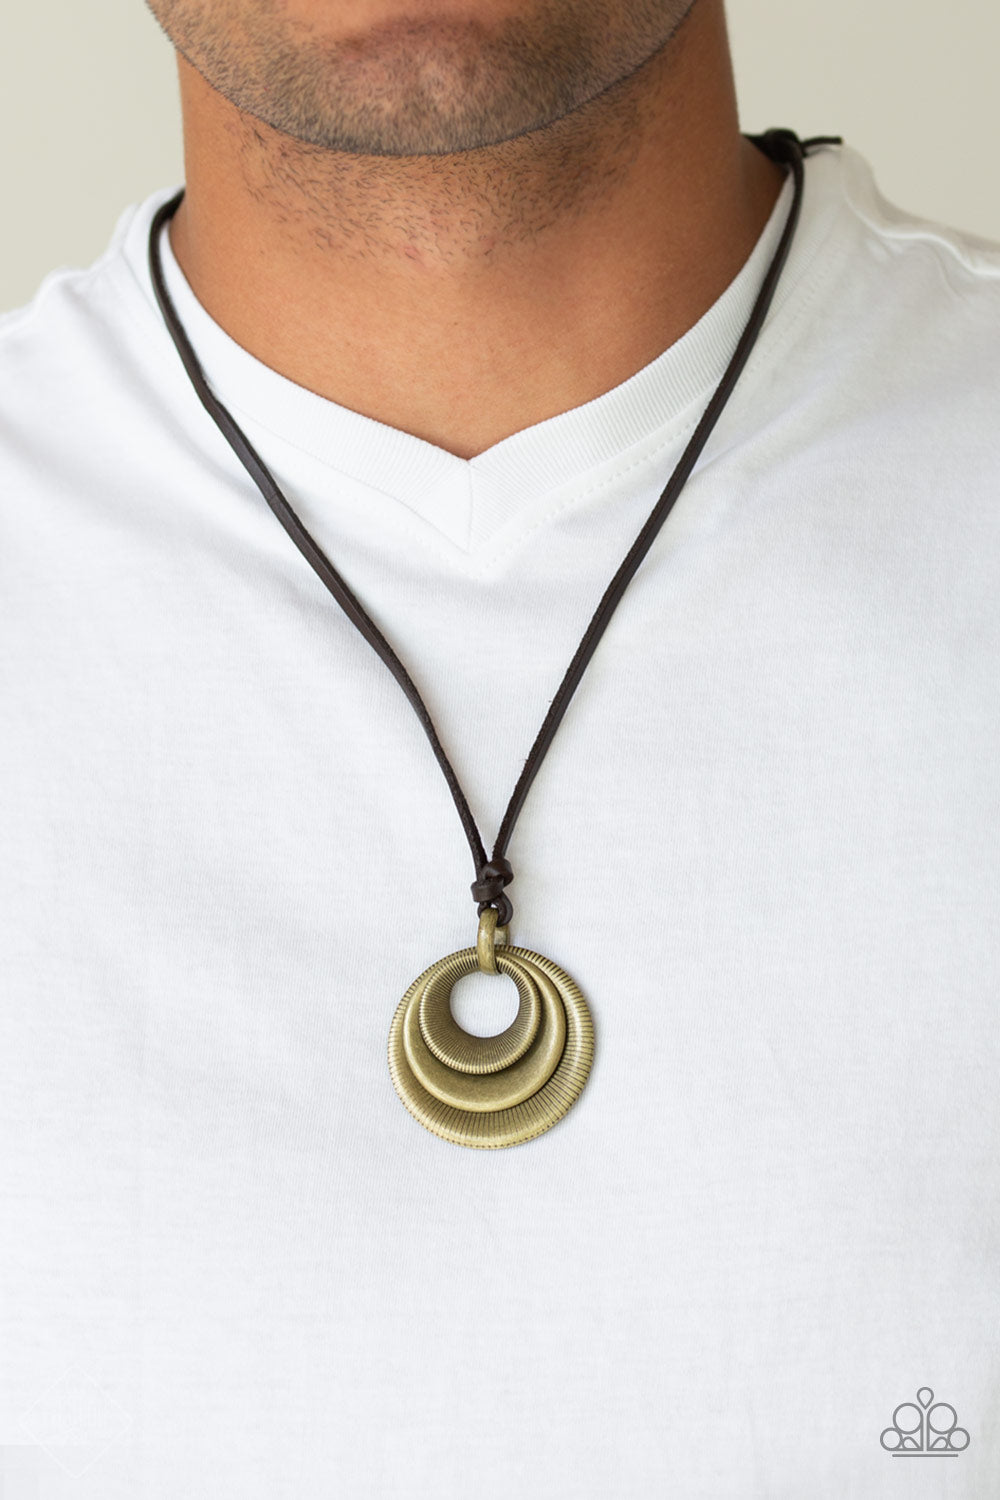 Desert Spiral Necklace - Uniquely Urban Brass